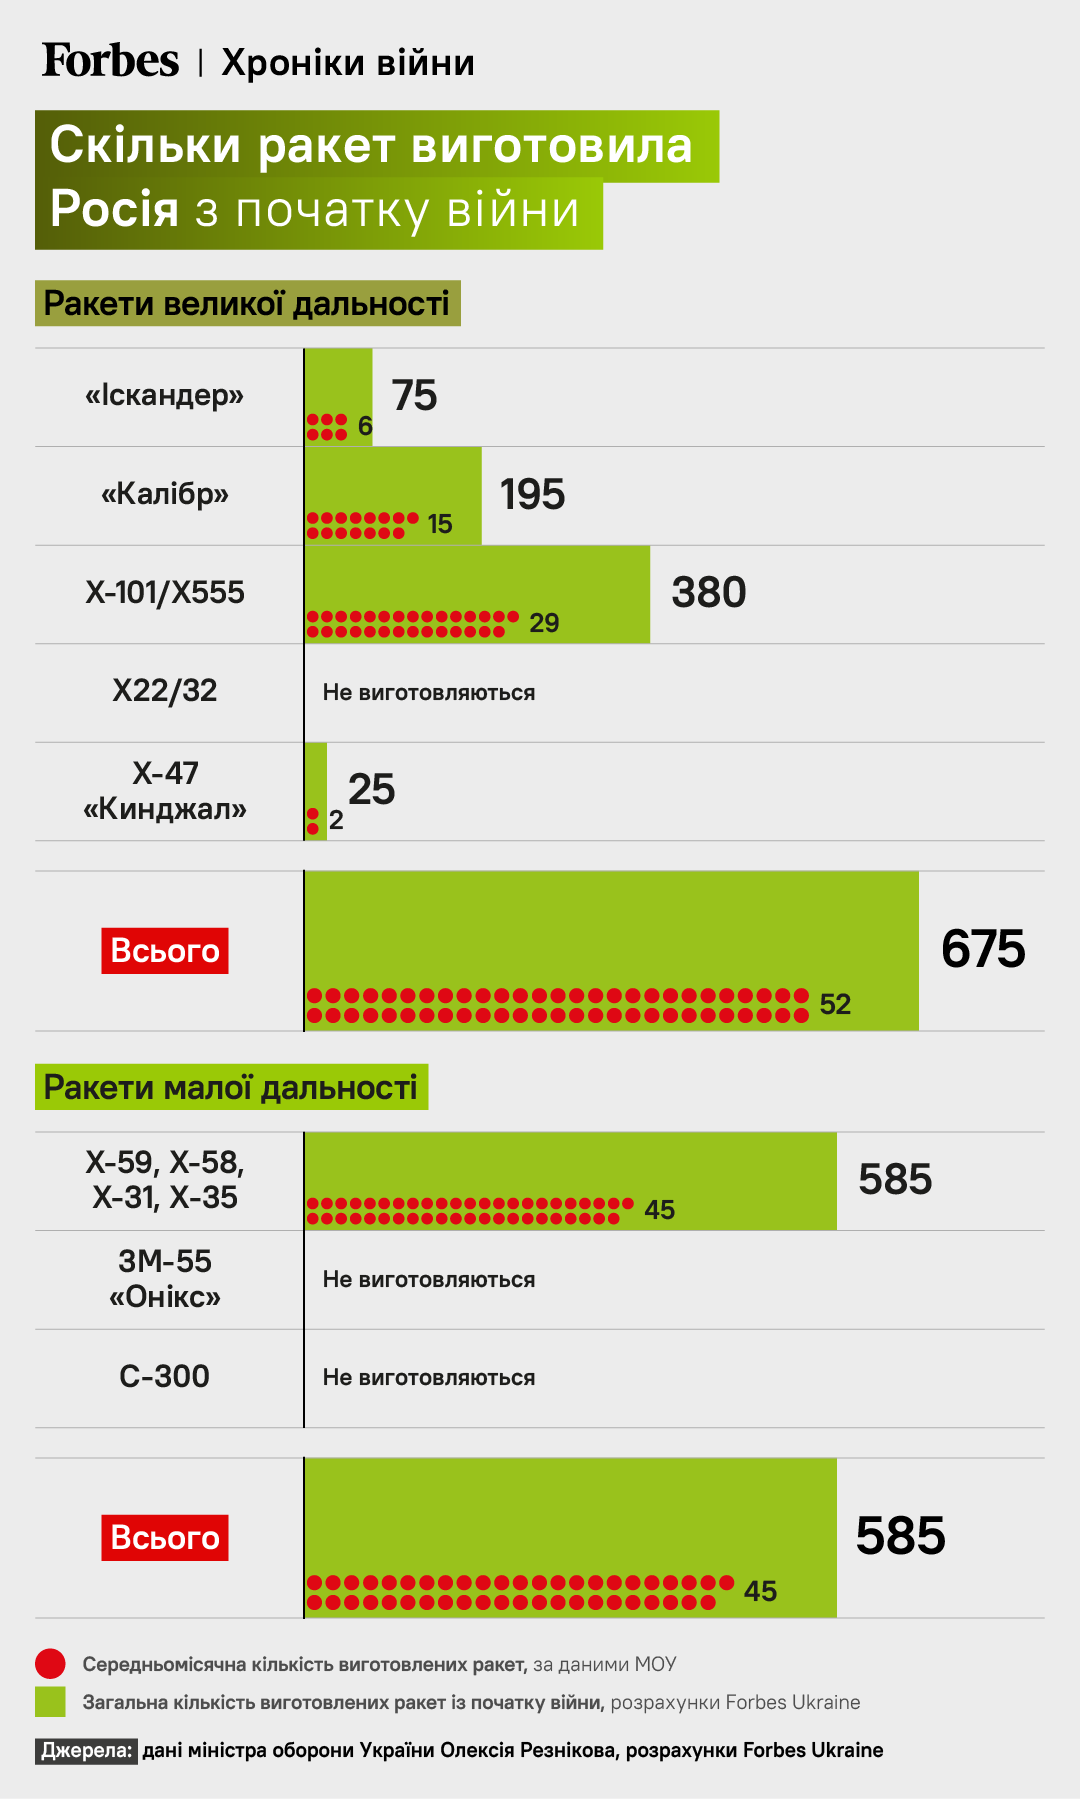 Запас деяких видів ракет у Росії зменшився у 15 разів порівняно з початком вторгнення 24 лютого. Інфографіка